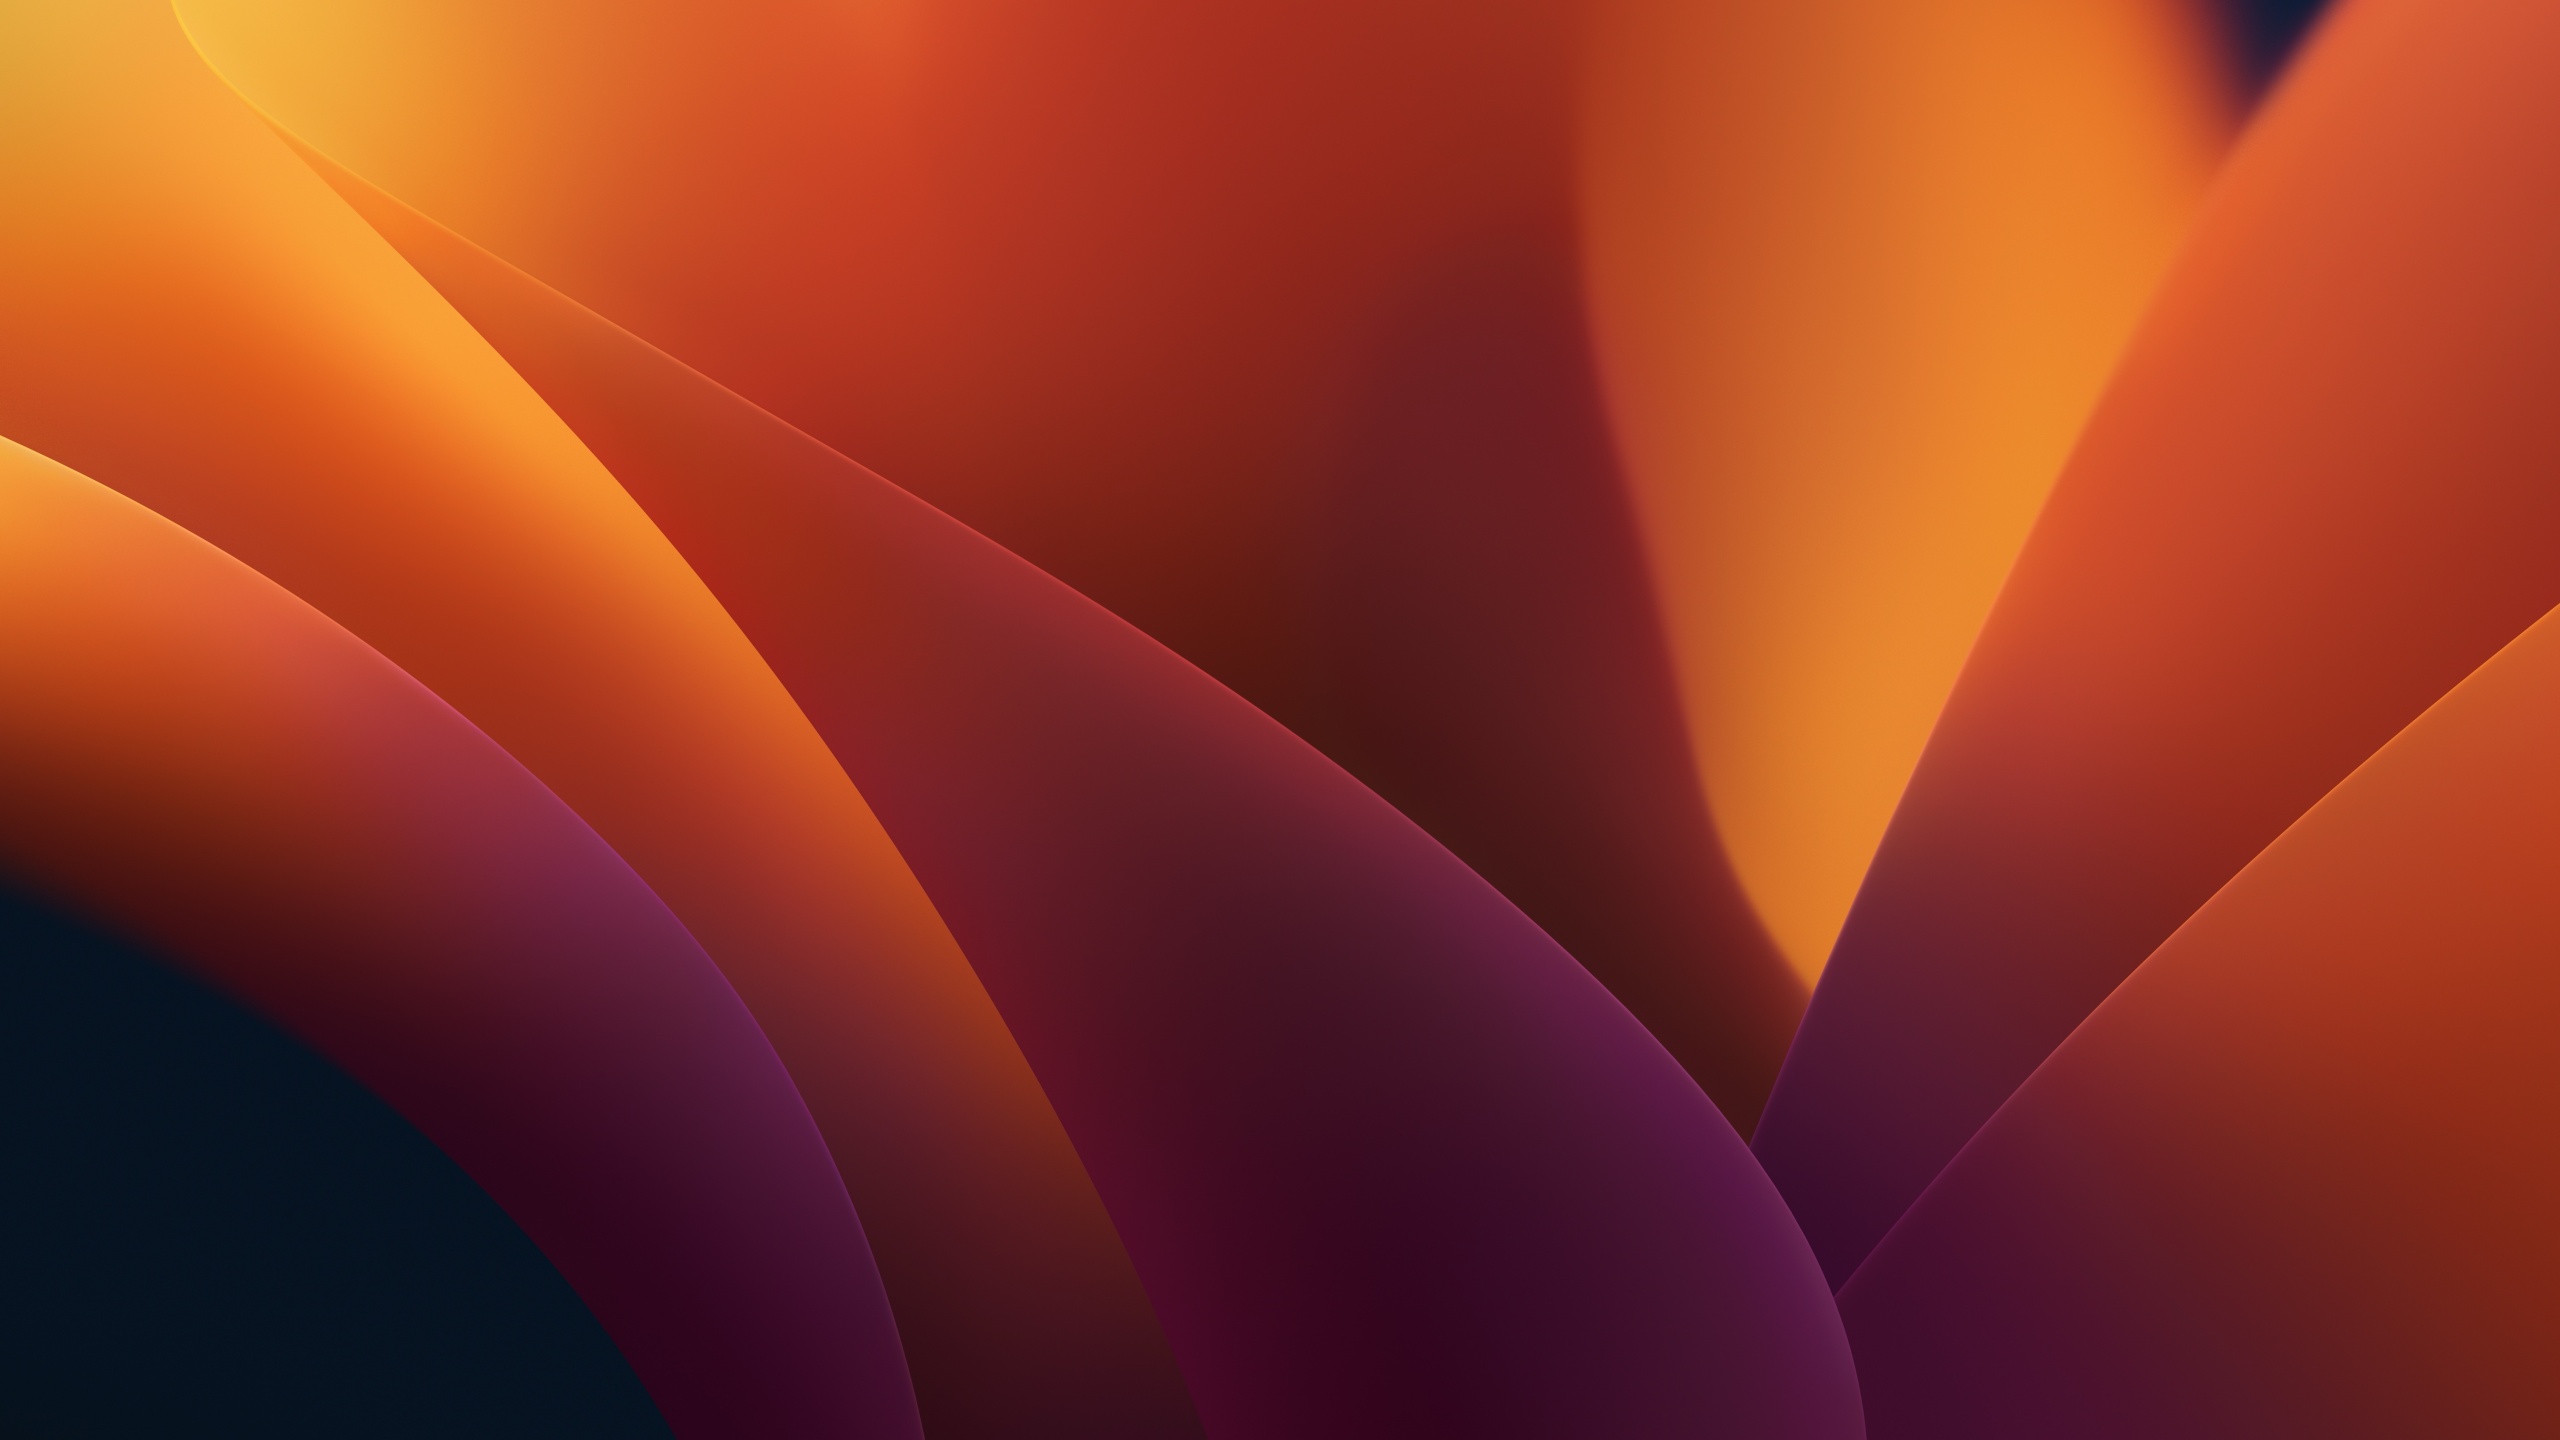 Thích sử dụng chiếc máy tính chạy hệ điều hành macOS? Hãy tải ngay những hình nền độc đáo với chủ đề trừu tượng, tạo hình ảnh phong phú cho màn hình của bạn. Hãy tha hồ khám phá thiết kế đầy sáng tạo của những bộ hình nền macOS Ventura 4K, macOS 13 hay macOS 2022 và tận hưởng từng ngày làm việc với nhiều màu sắc mới lạ.